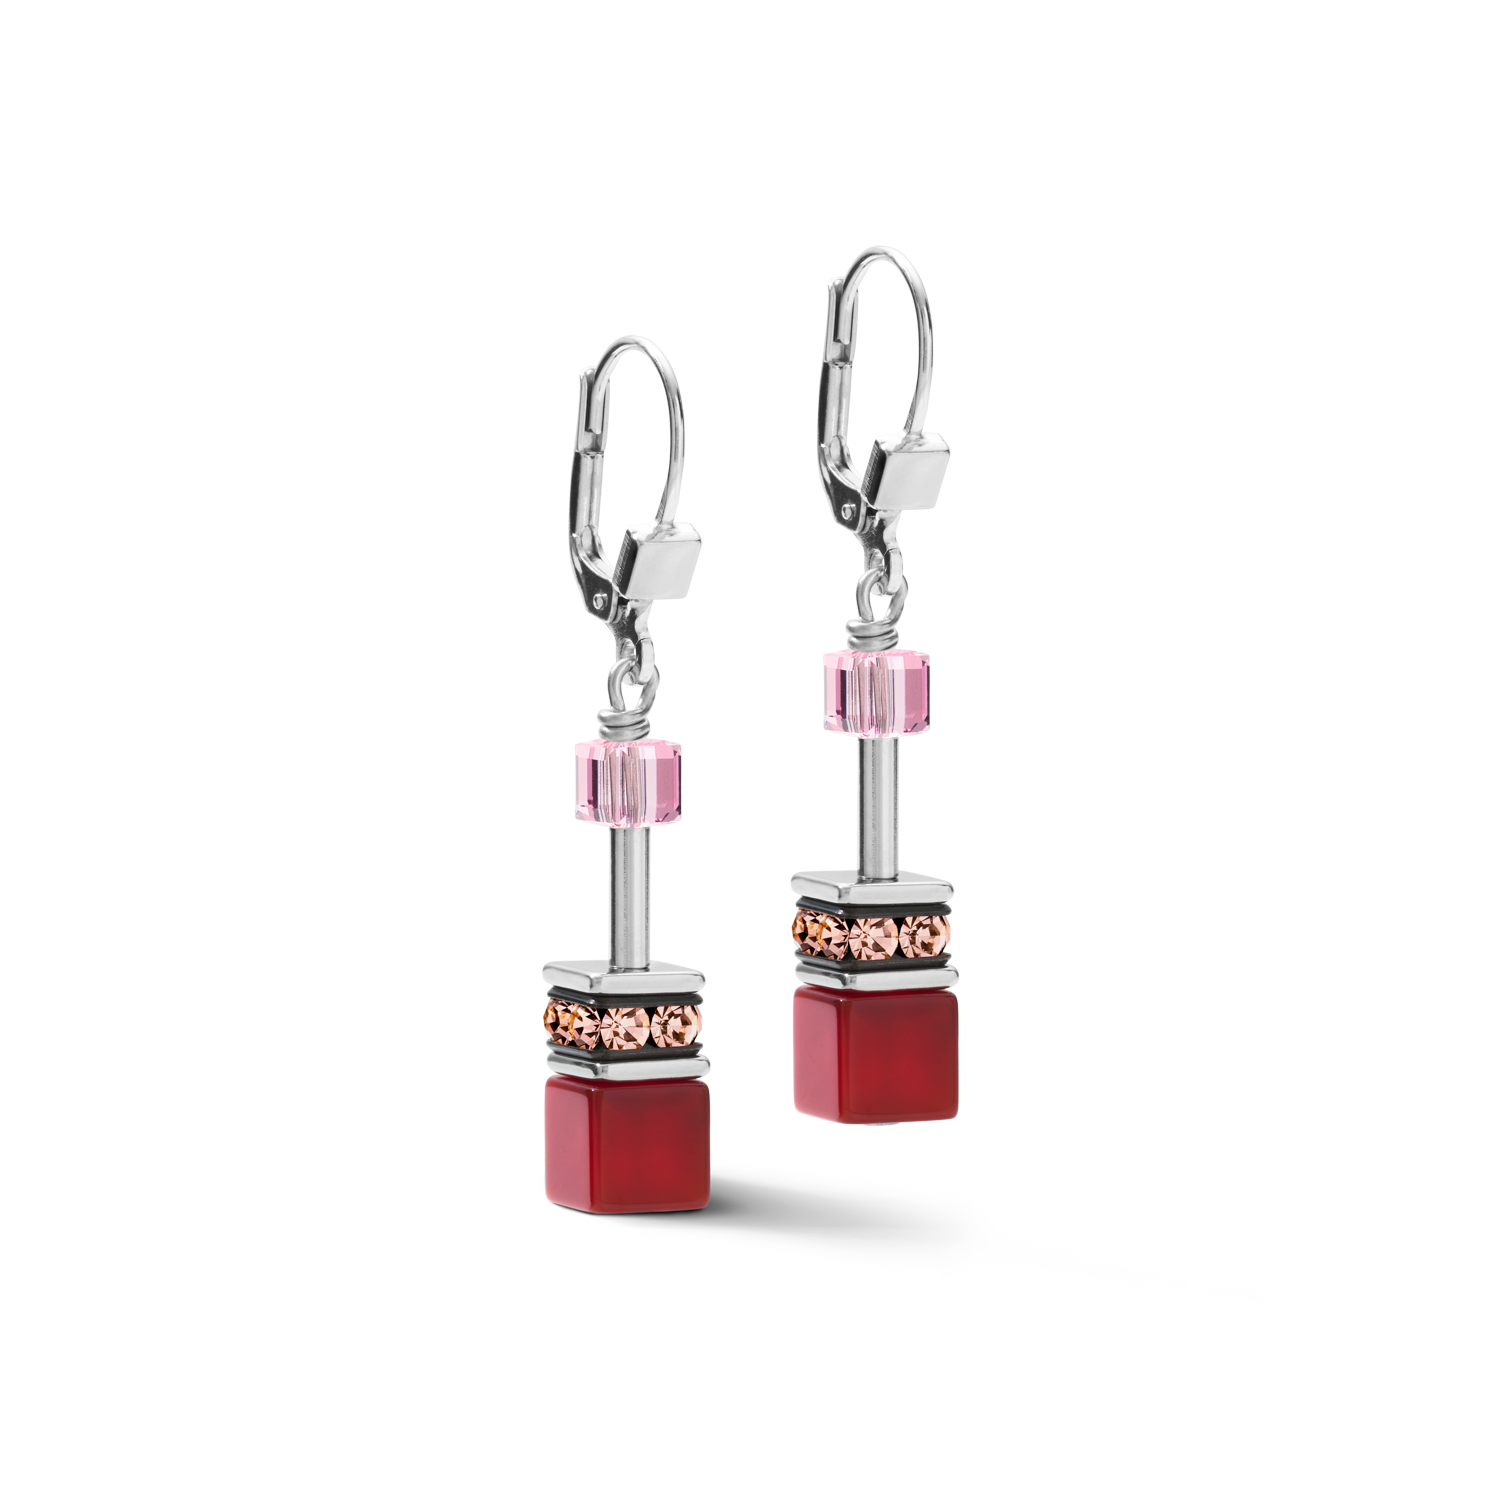 Earrings GeoCUBE® Crystals & Gemstones red-purple